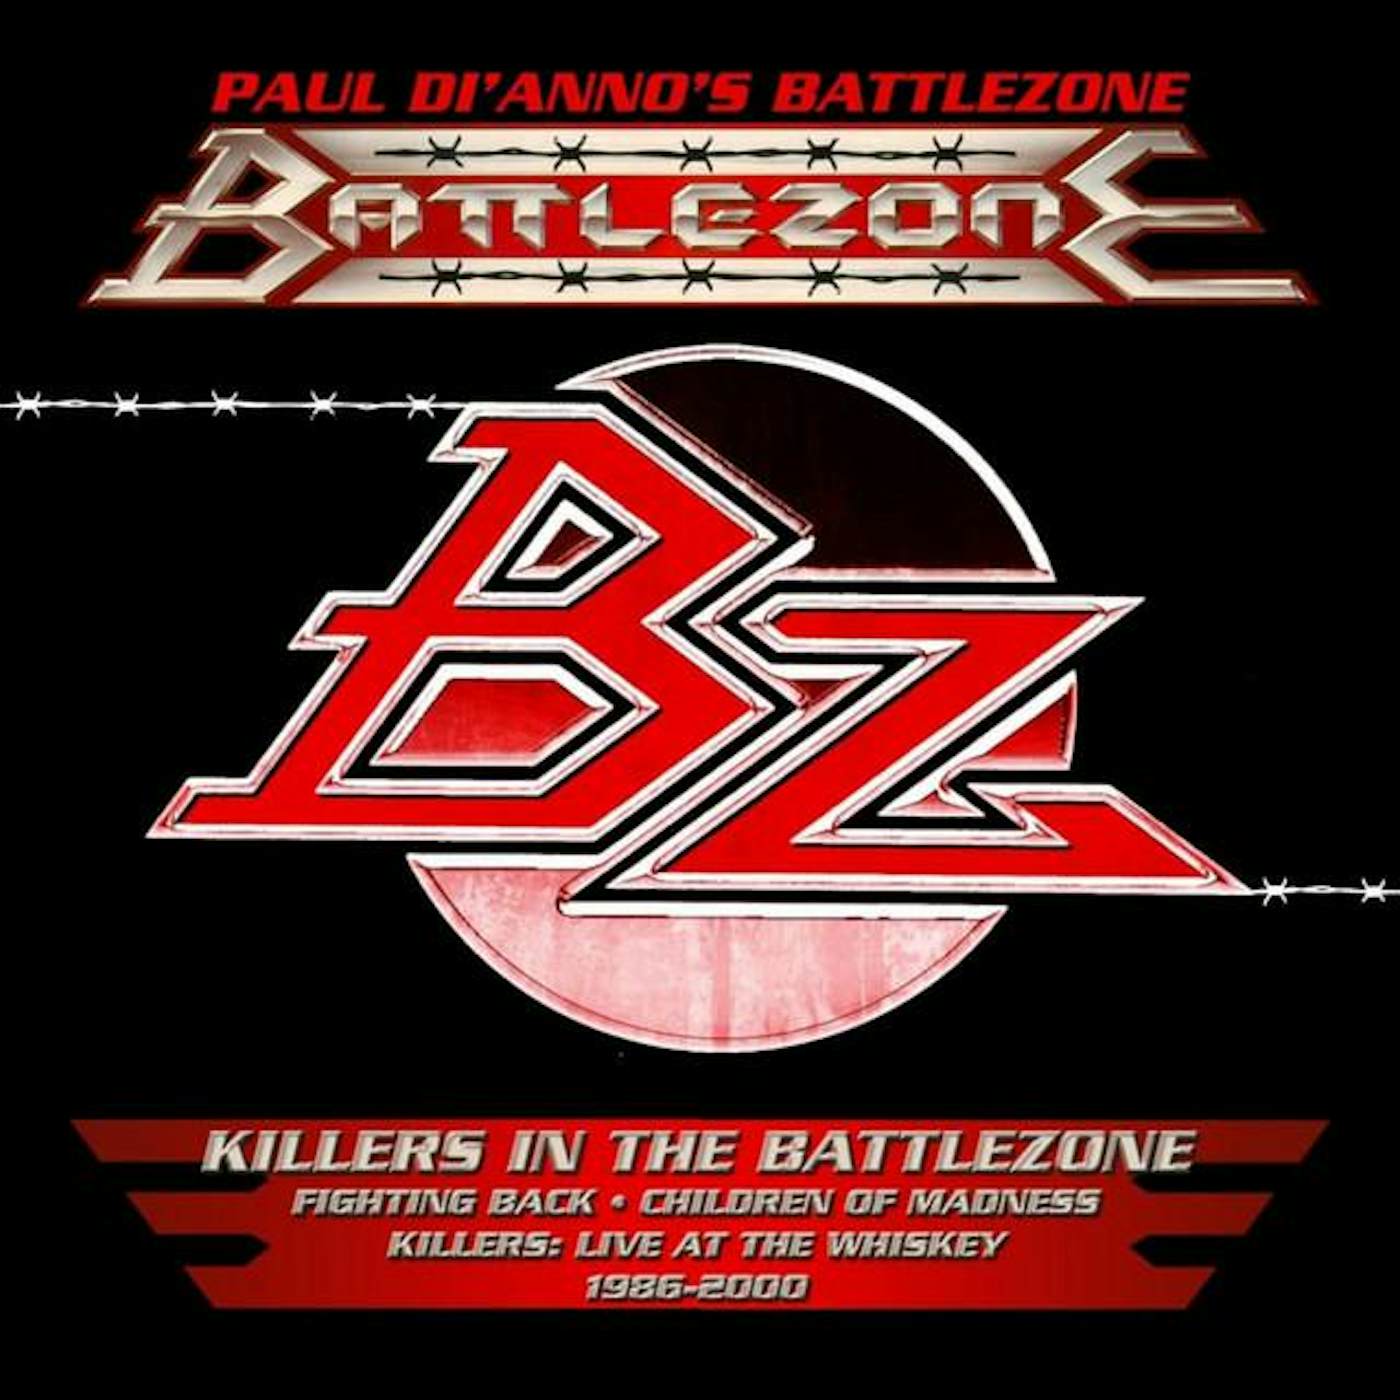 Paul Di'Anno's Battlezone